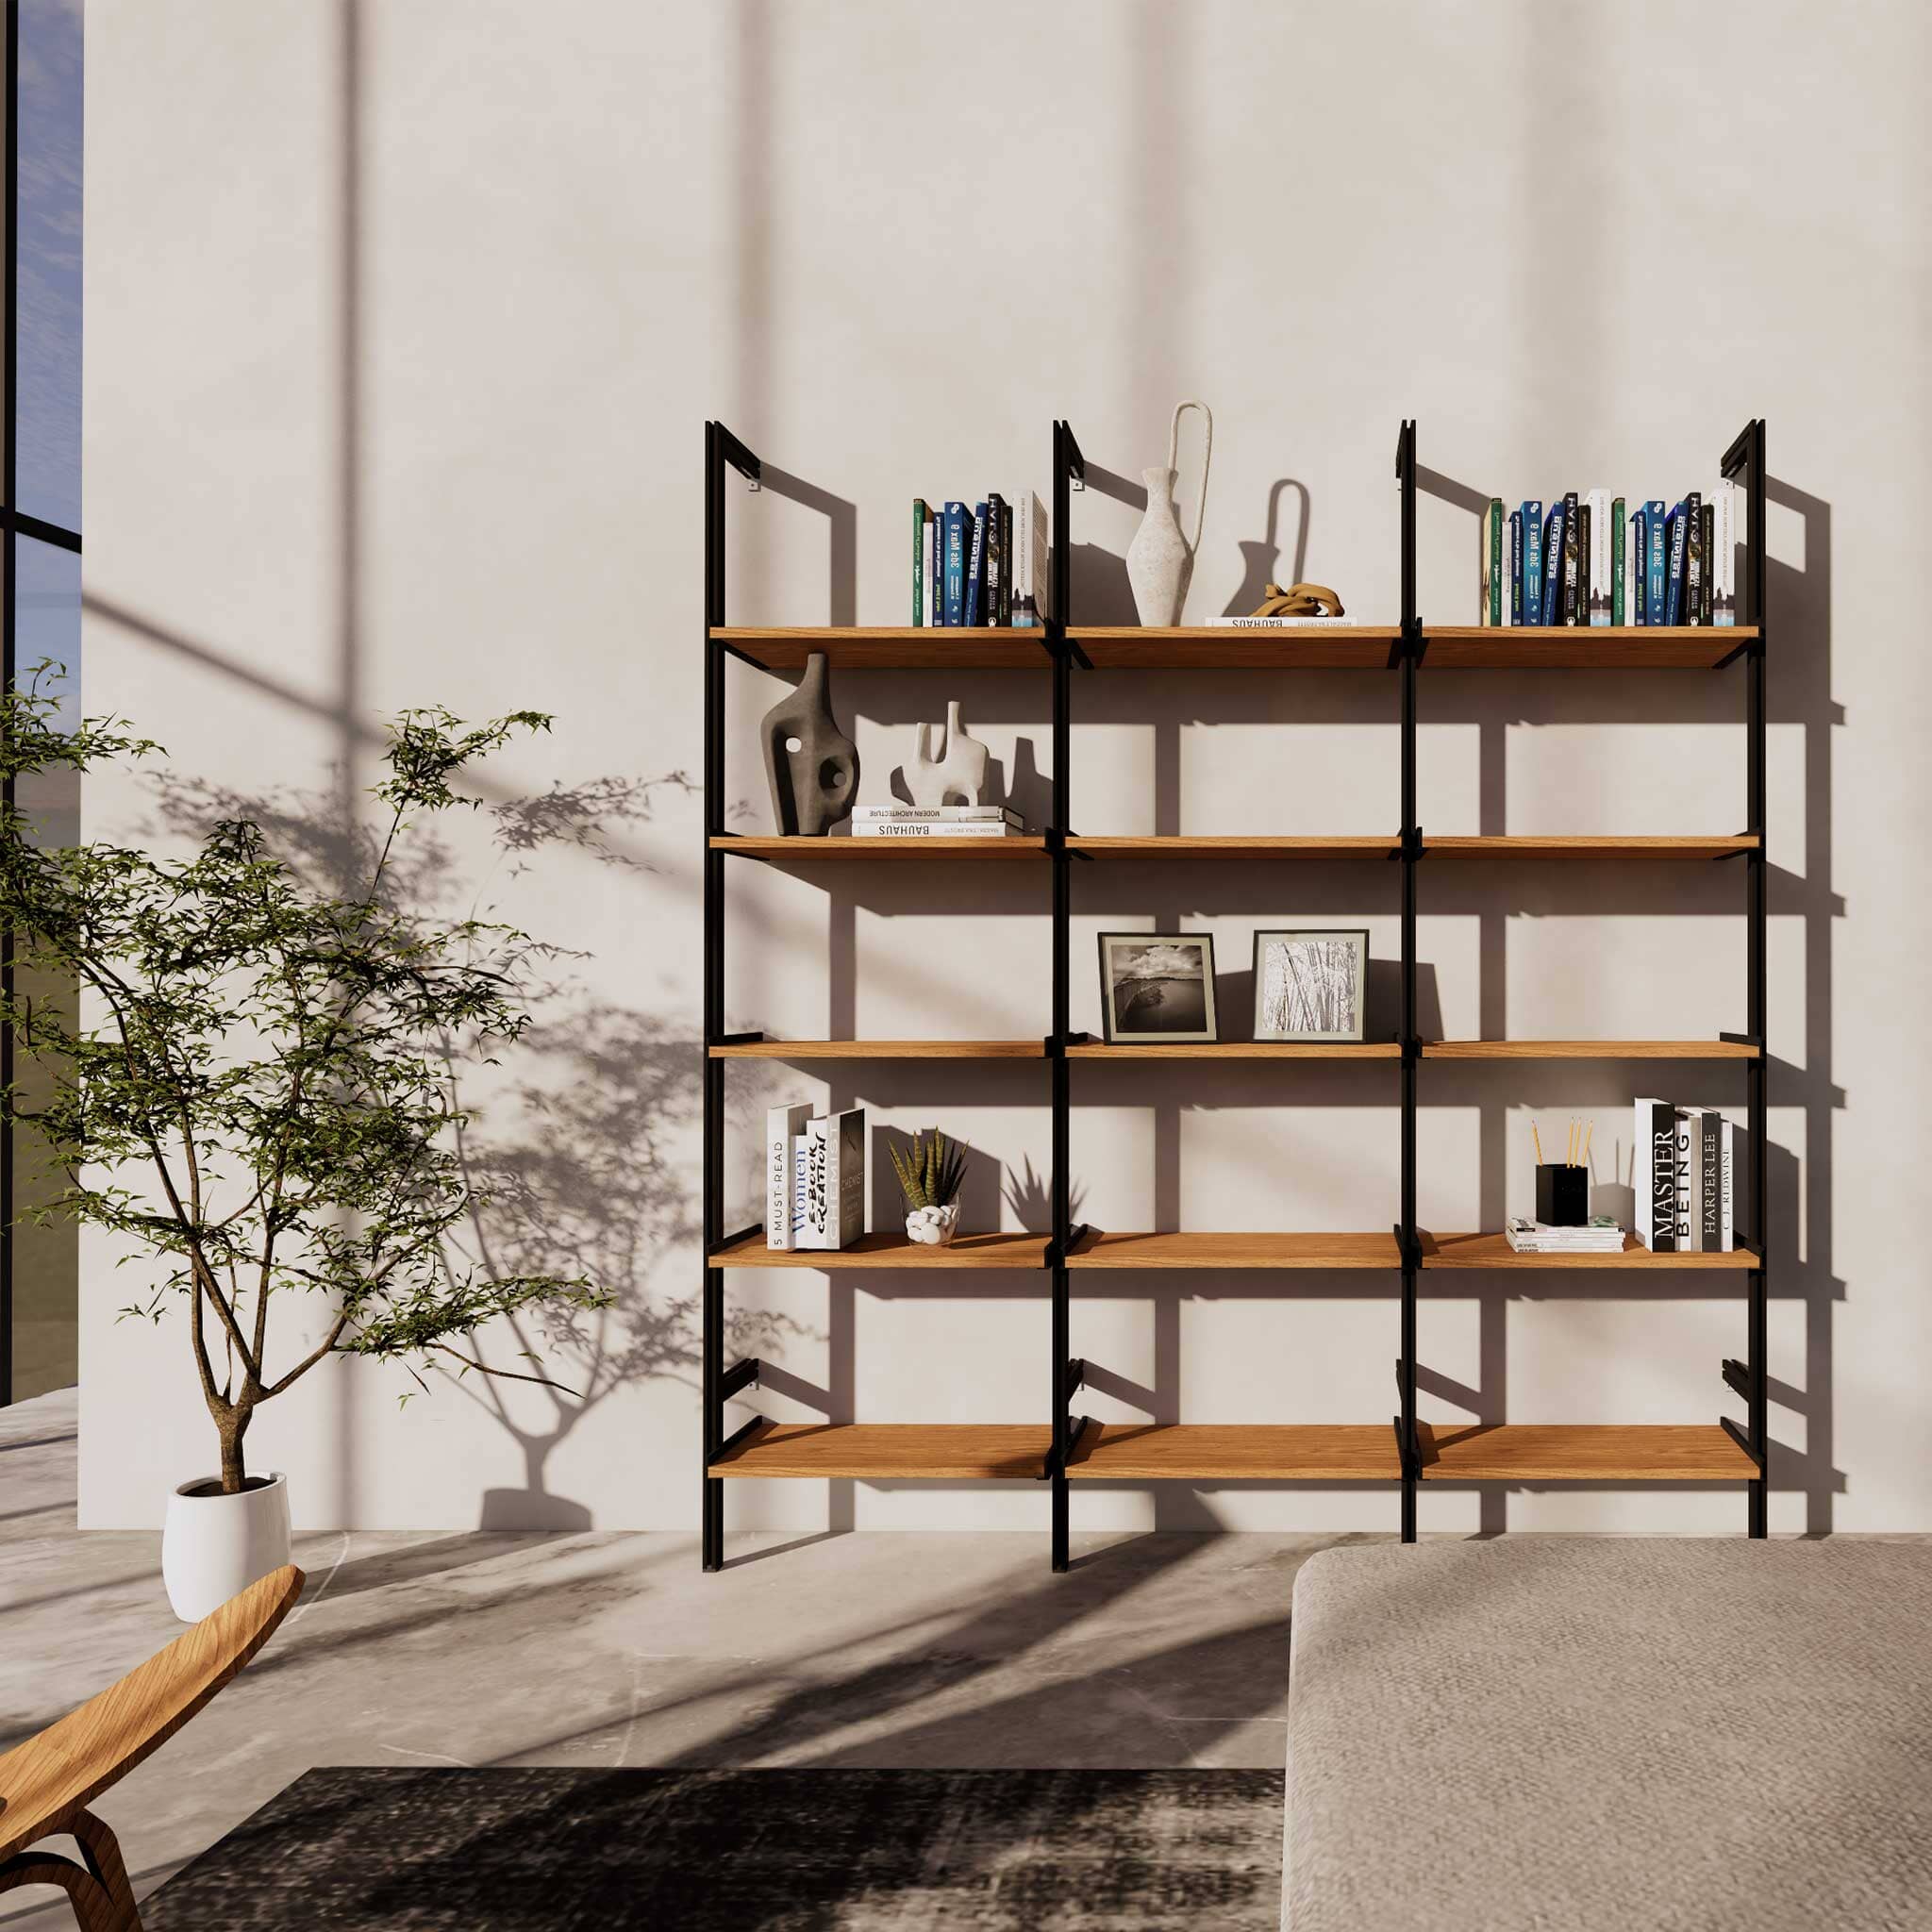 Modular shelves, white, black, bookshelves, room dividers, shelving system